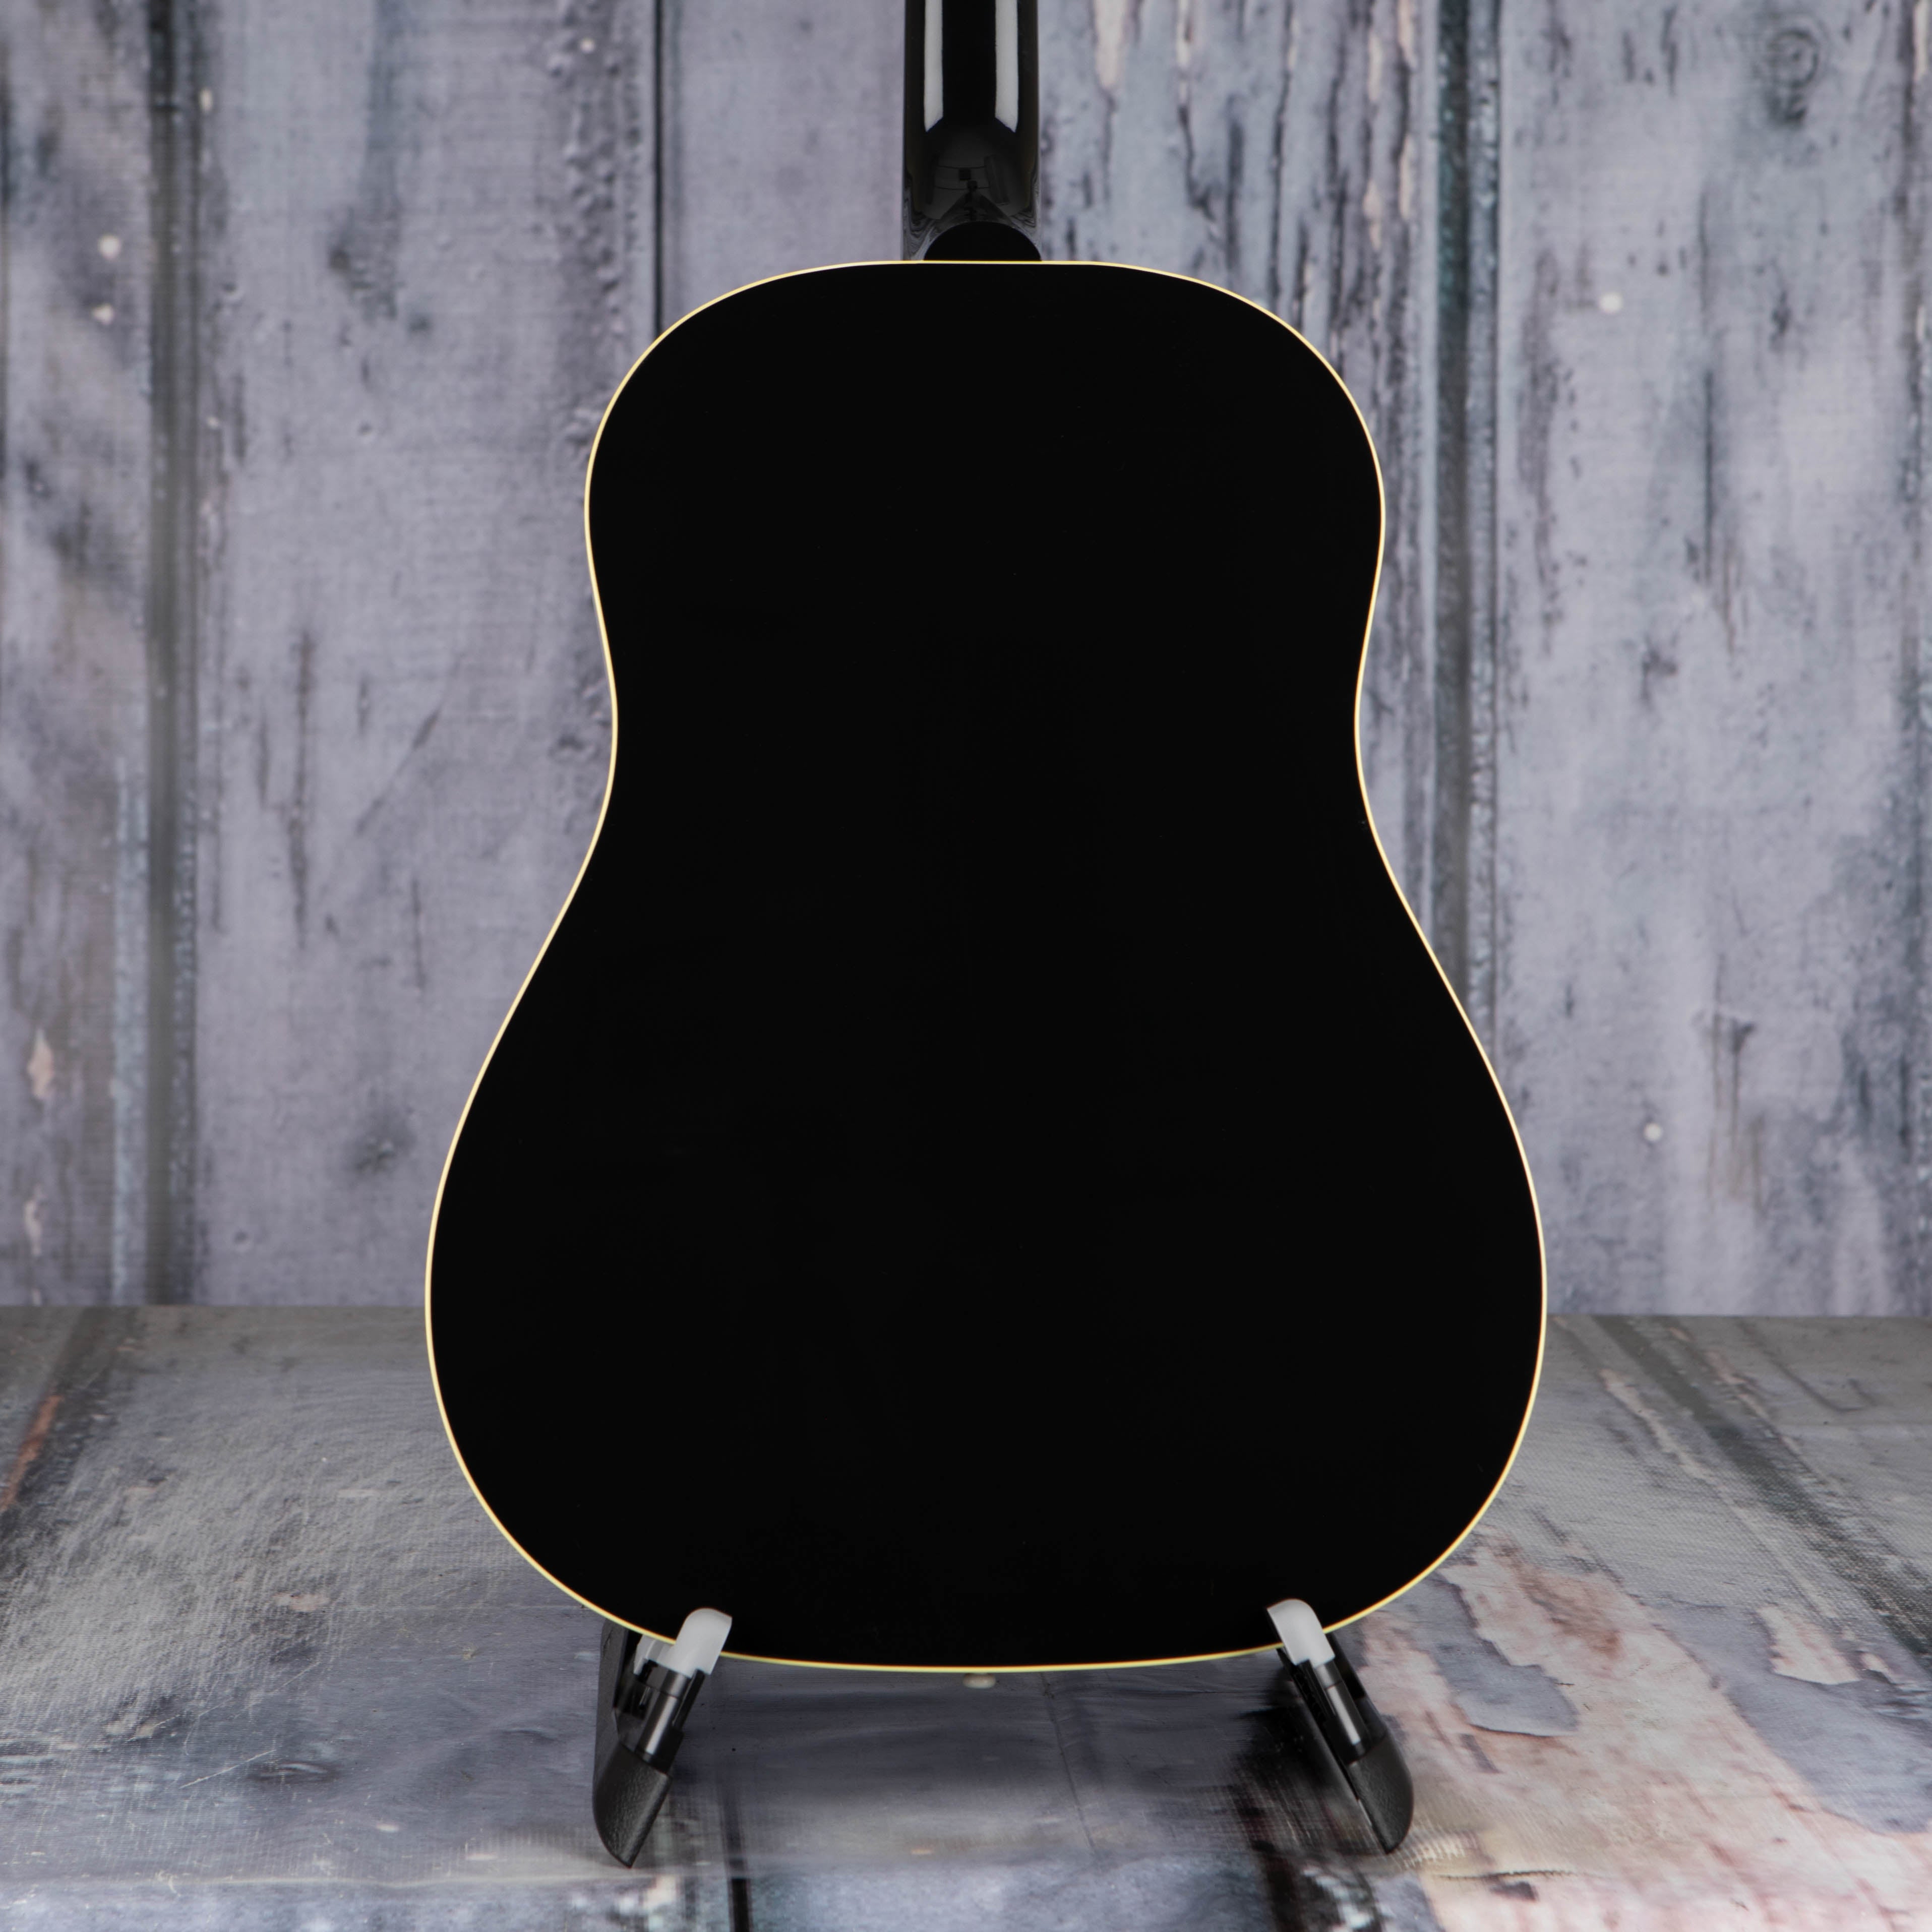 Gibson Montana 60s J-45 Original Acoustic Guitar, Ebony, back closeup